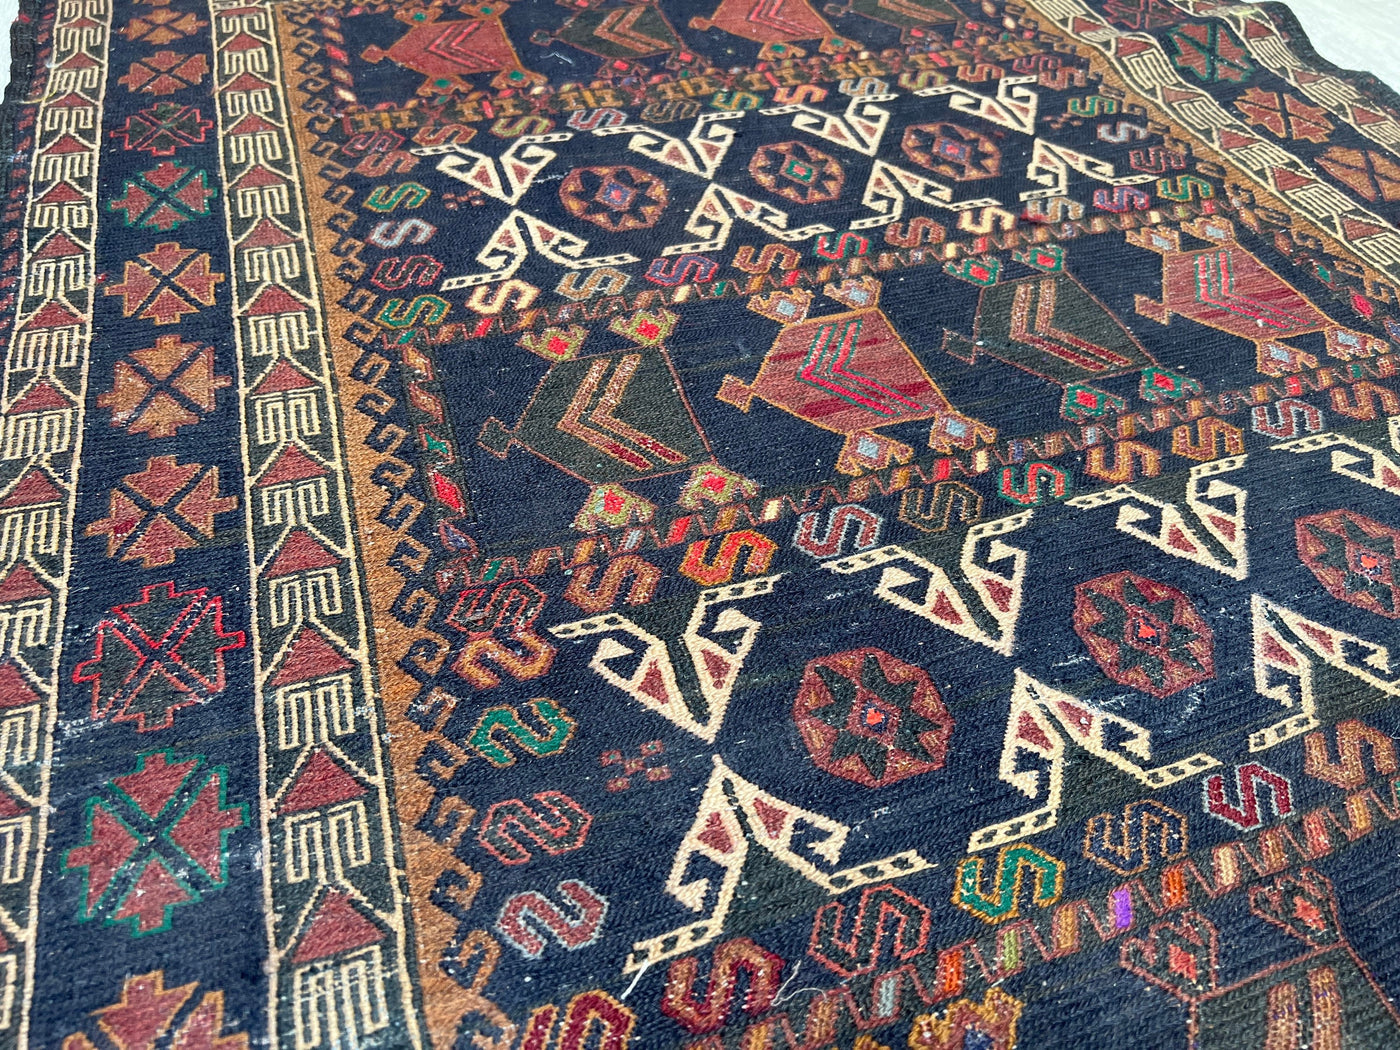 195x100 cm orient Teppich Nomaden kasak sumakh kelim afghan Beloch kilim Nr-9 Teppiche Orientsbazar   